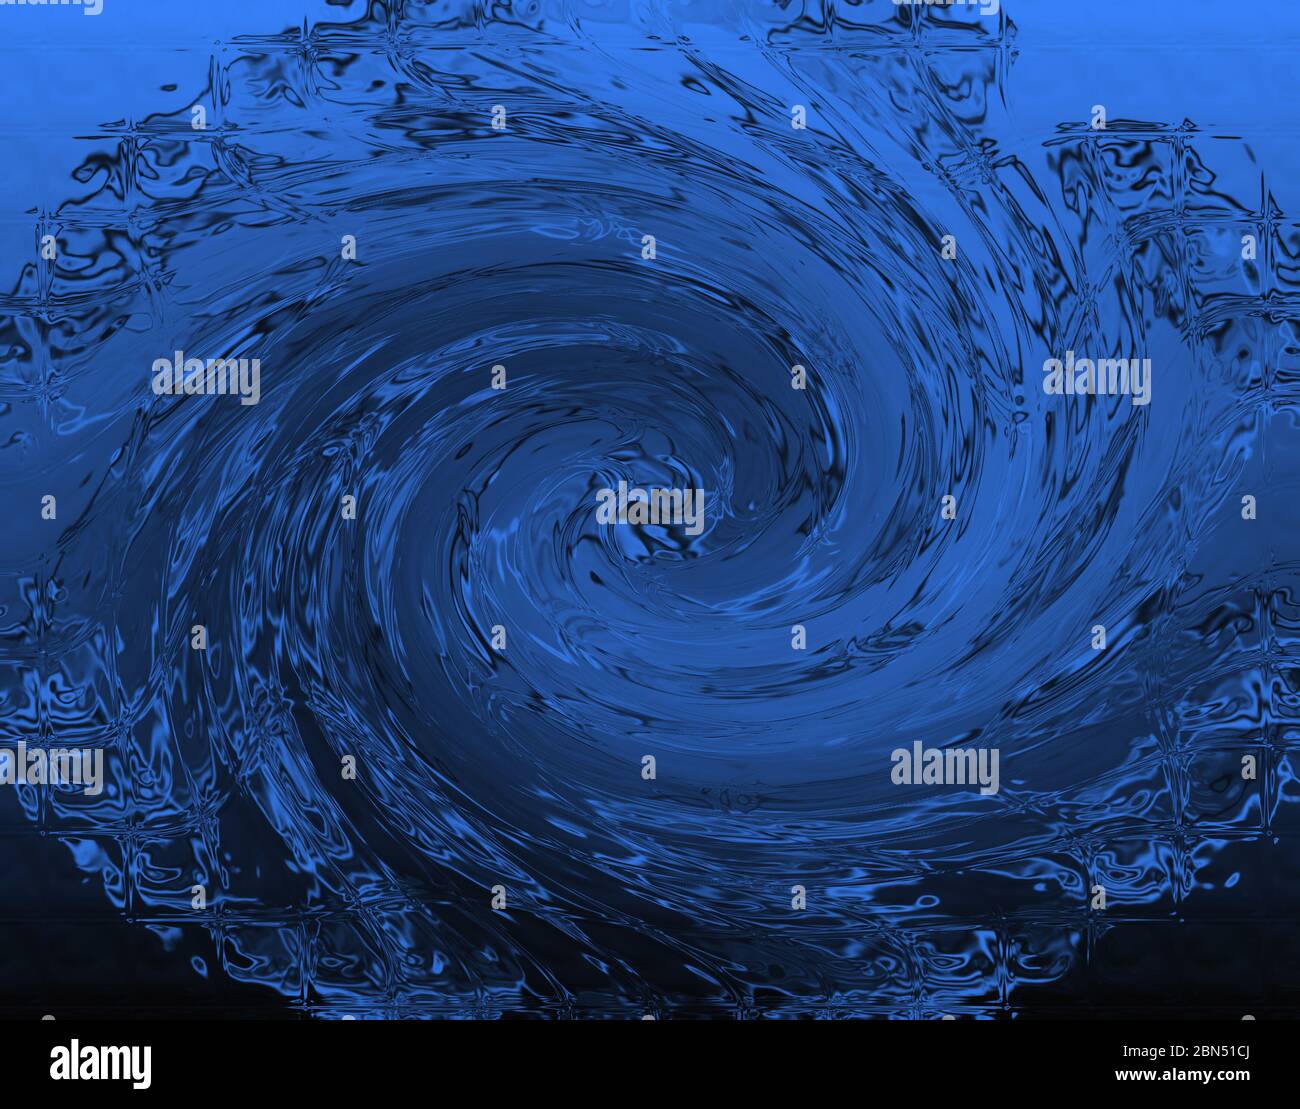 Eine wirbelnde Welle, die einen Strudel aus blauem Wasser erzeugt, Konzept für Sturm, Hurrikan, Whirlpool, Sommer Stockfoto